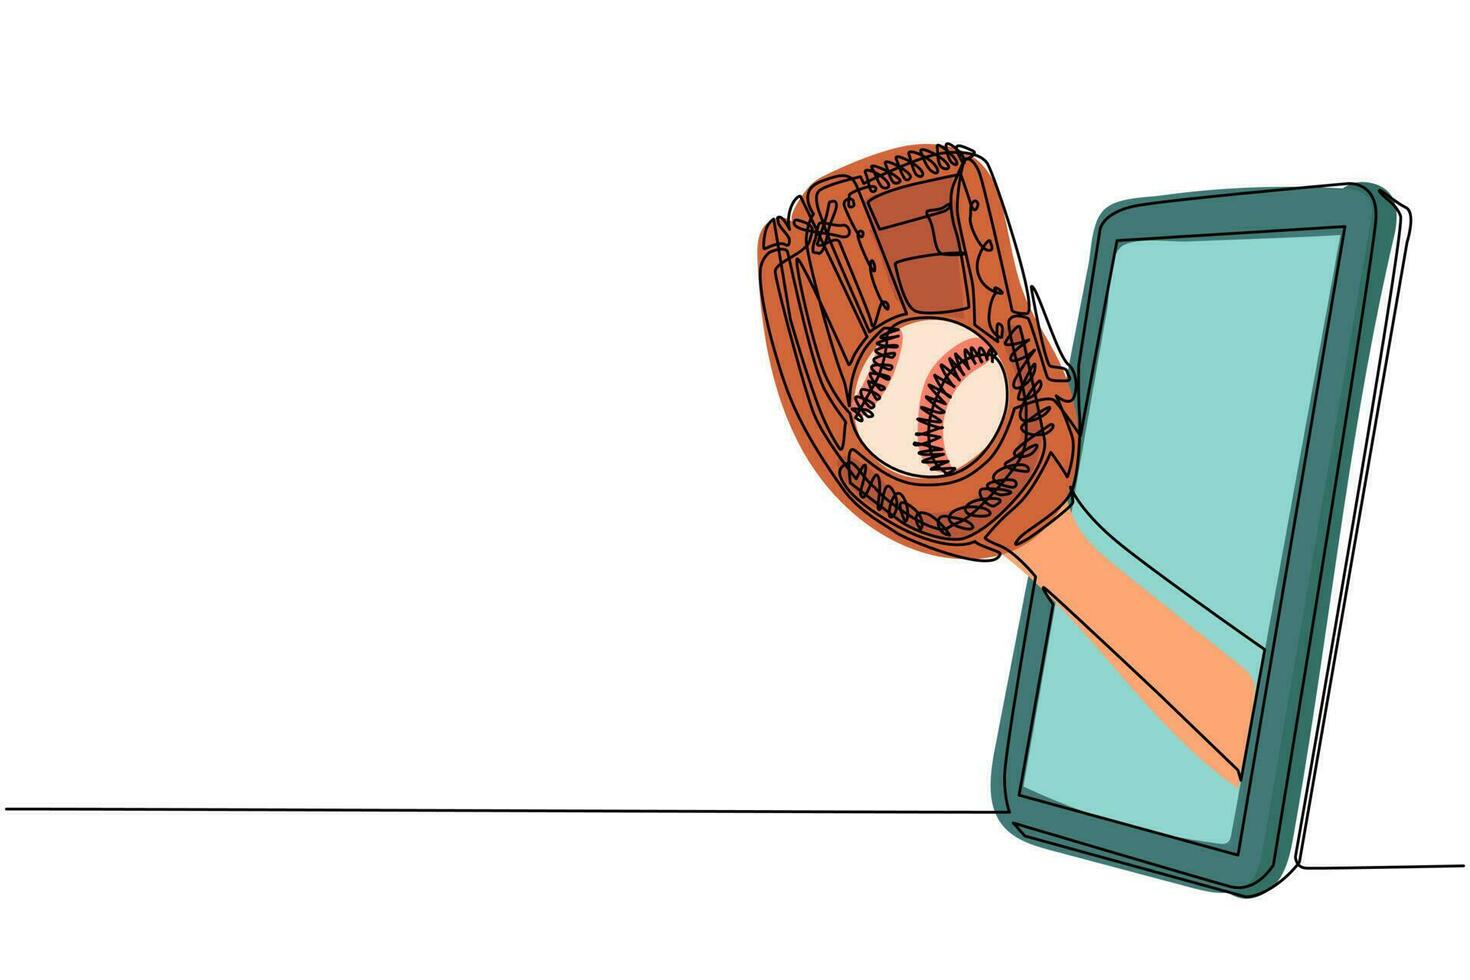 enkele doorlopende lijntekening werper hand houdt honkbal met handschoen via mobiele telefoon. smartphone met app voor honkbalspellen. mobiel sportstreamkampioenschap. één lijn tekenen ontwerp vector